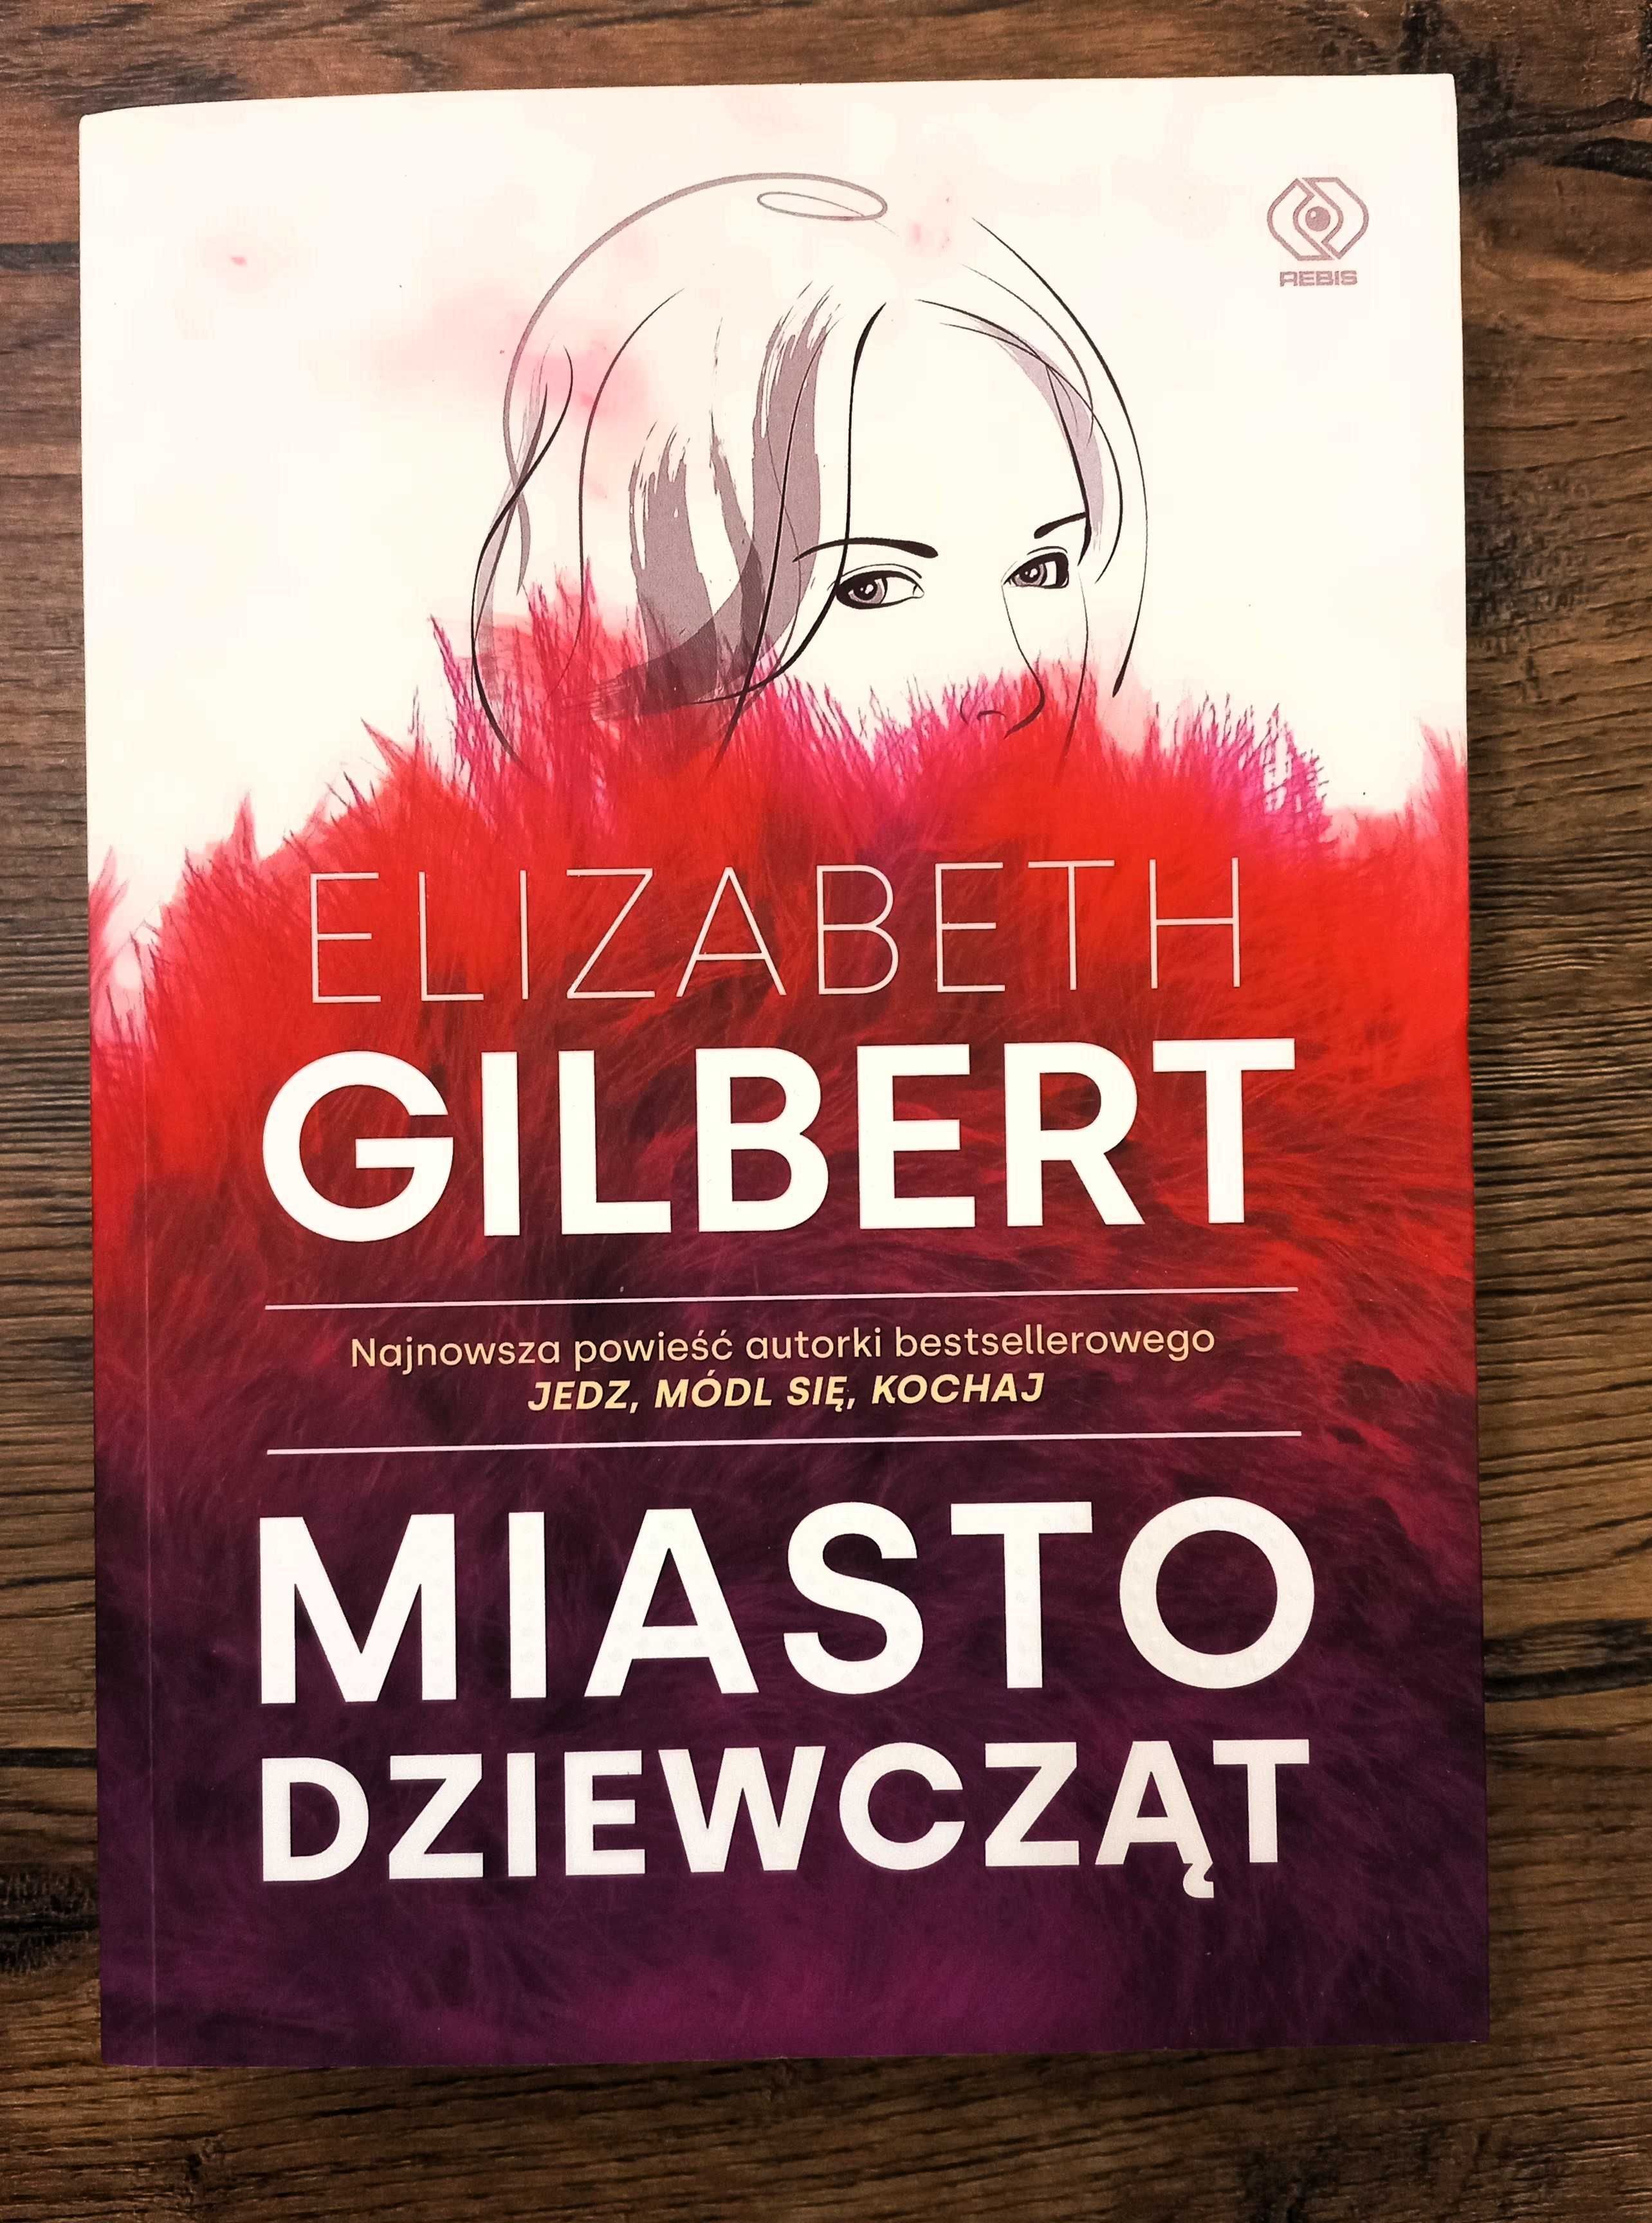 "Miasto dziewcząt" ("City of girls"), Elizabeth Gilbert